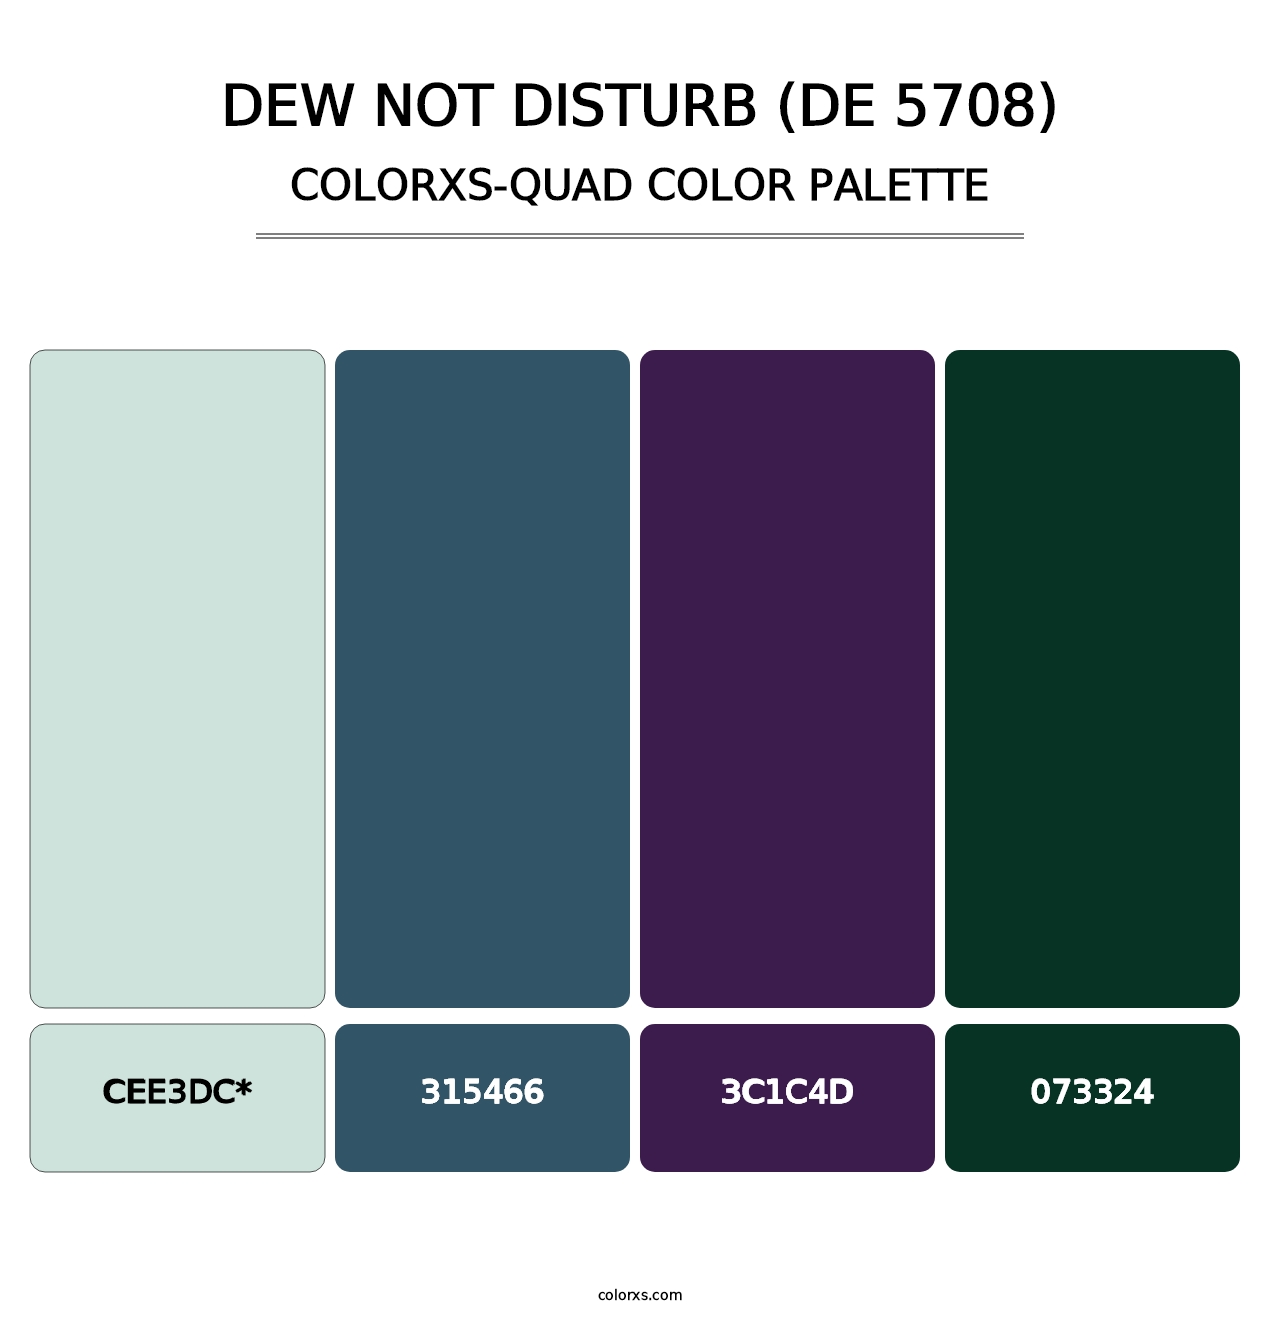 Dew Not Disturb (DE 5708) - Colorxs Quad Palette